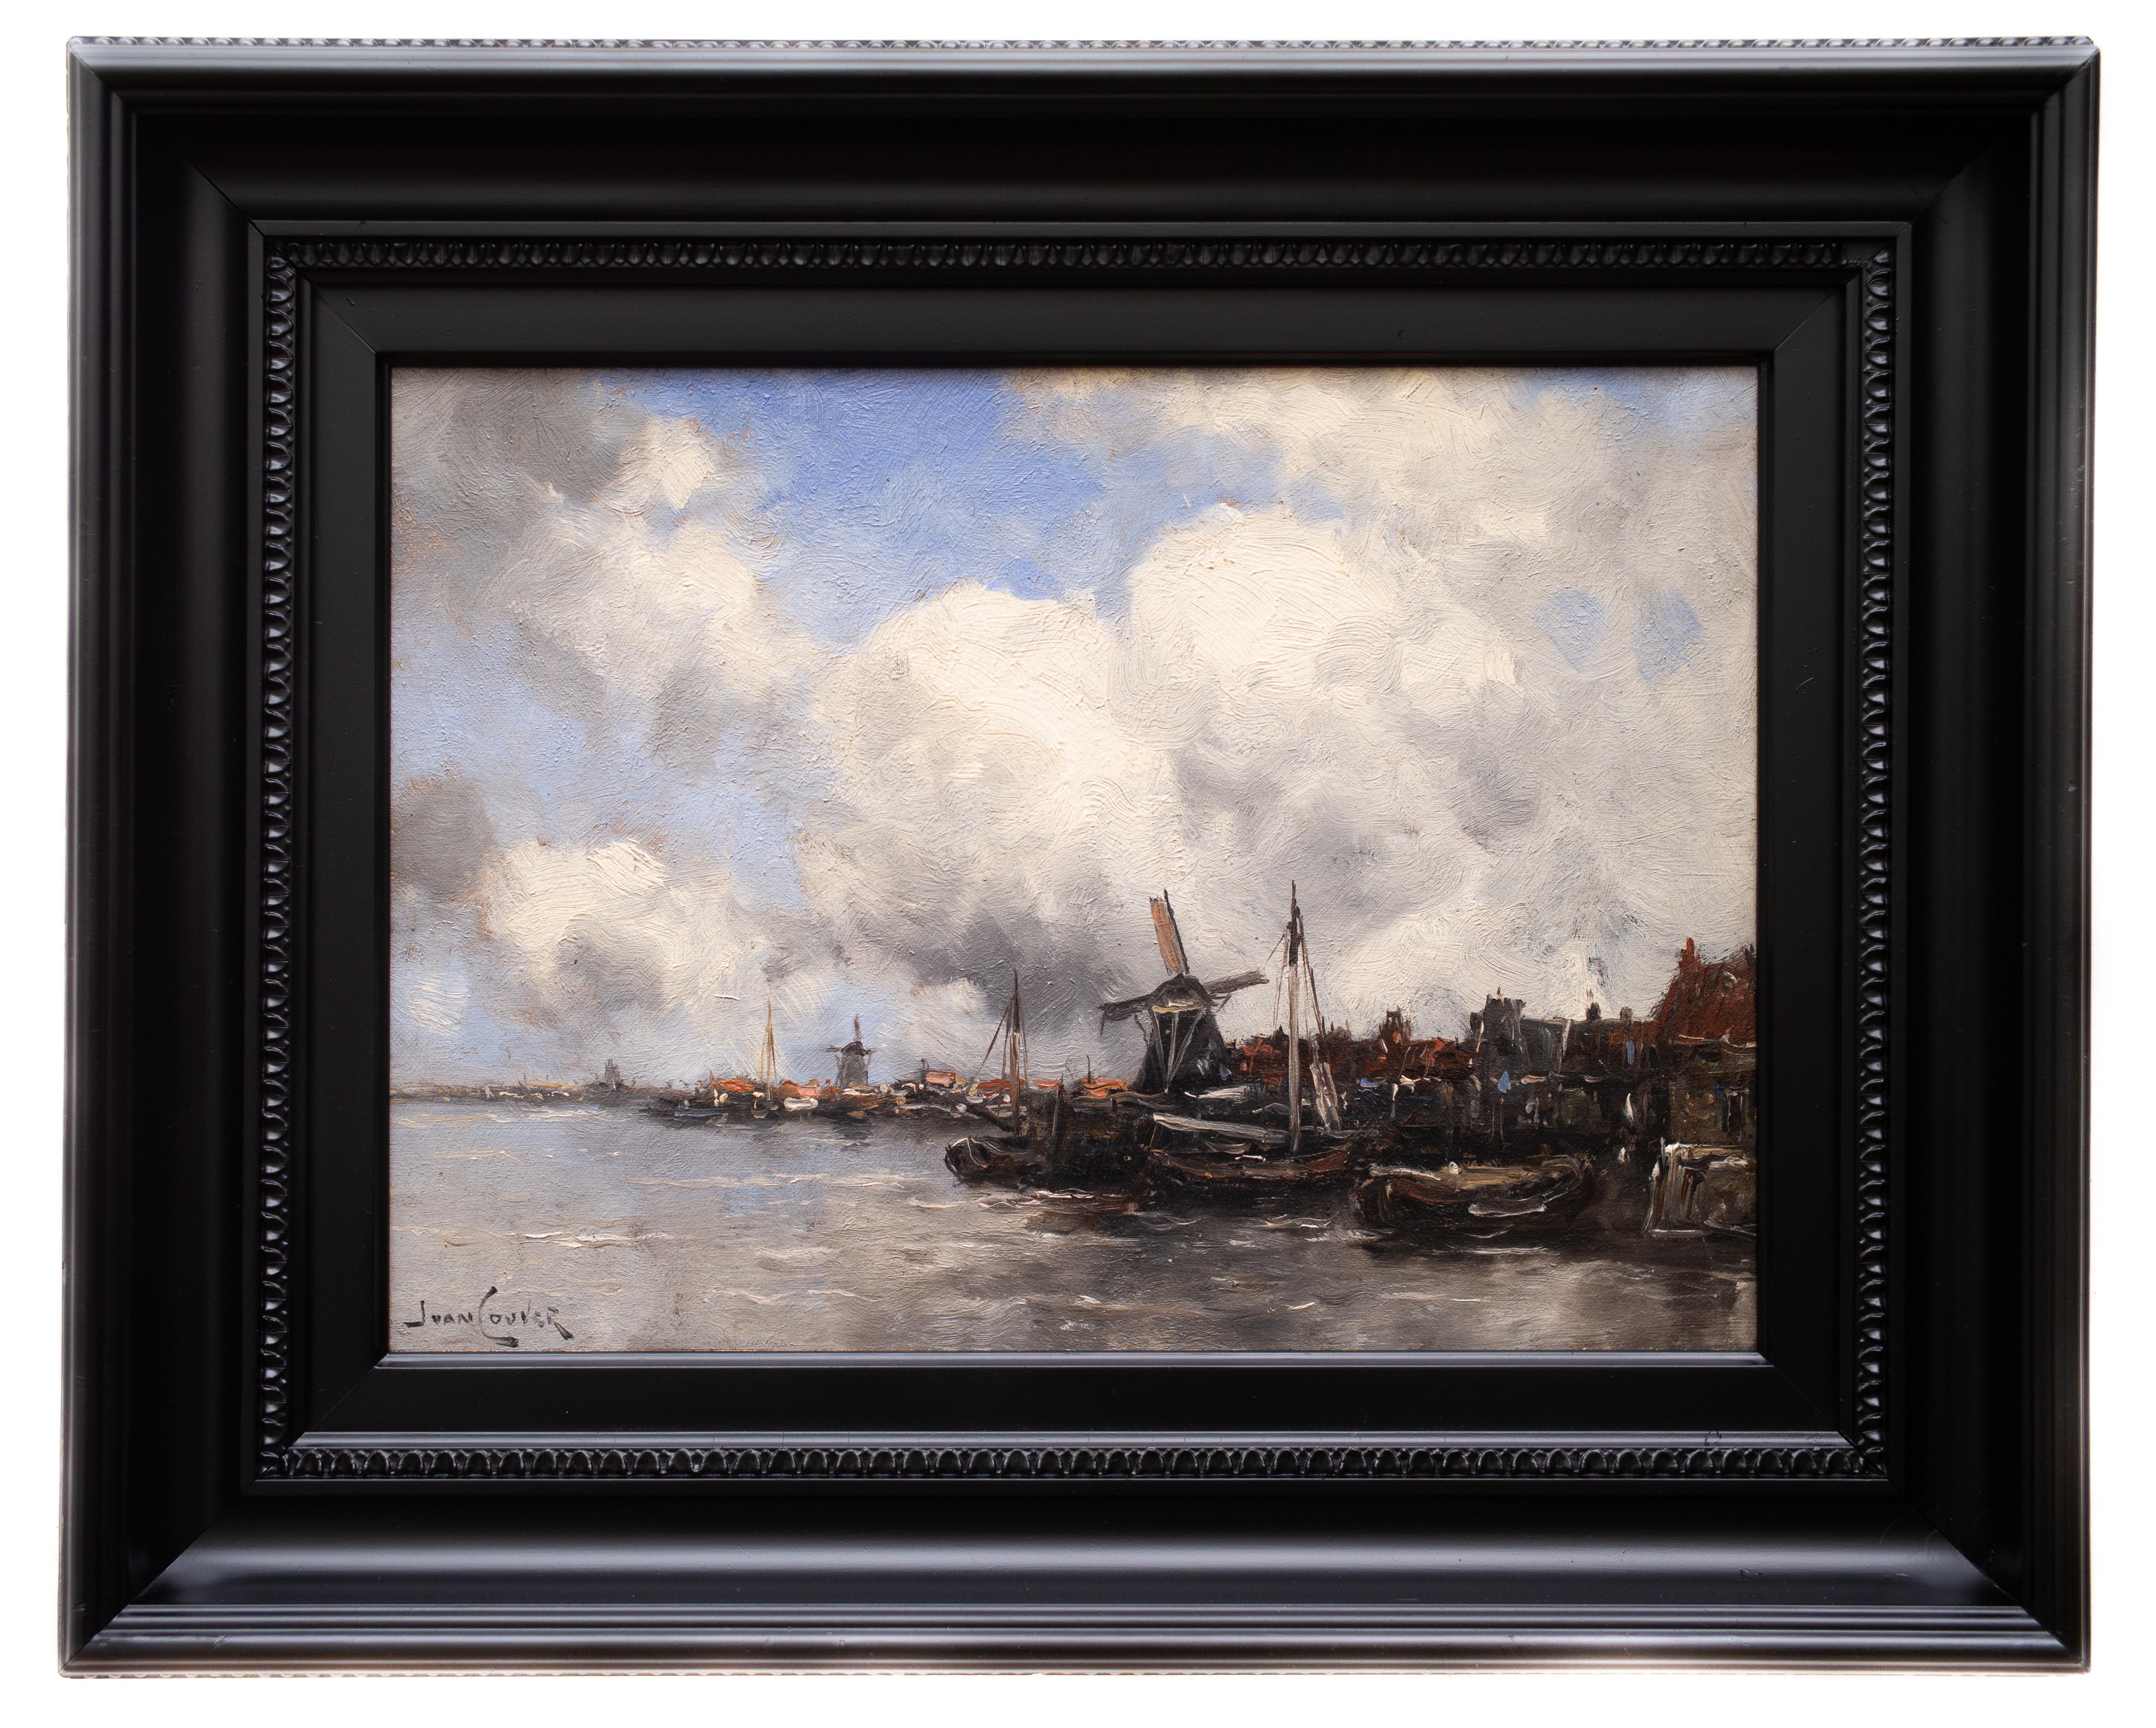 Ansicht einer niederländischen Stadt von Jan van Couver (Hermanus Koekkoek Jr.) Impressionismus – Painting von Jan Van Couver